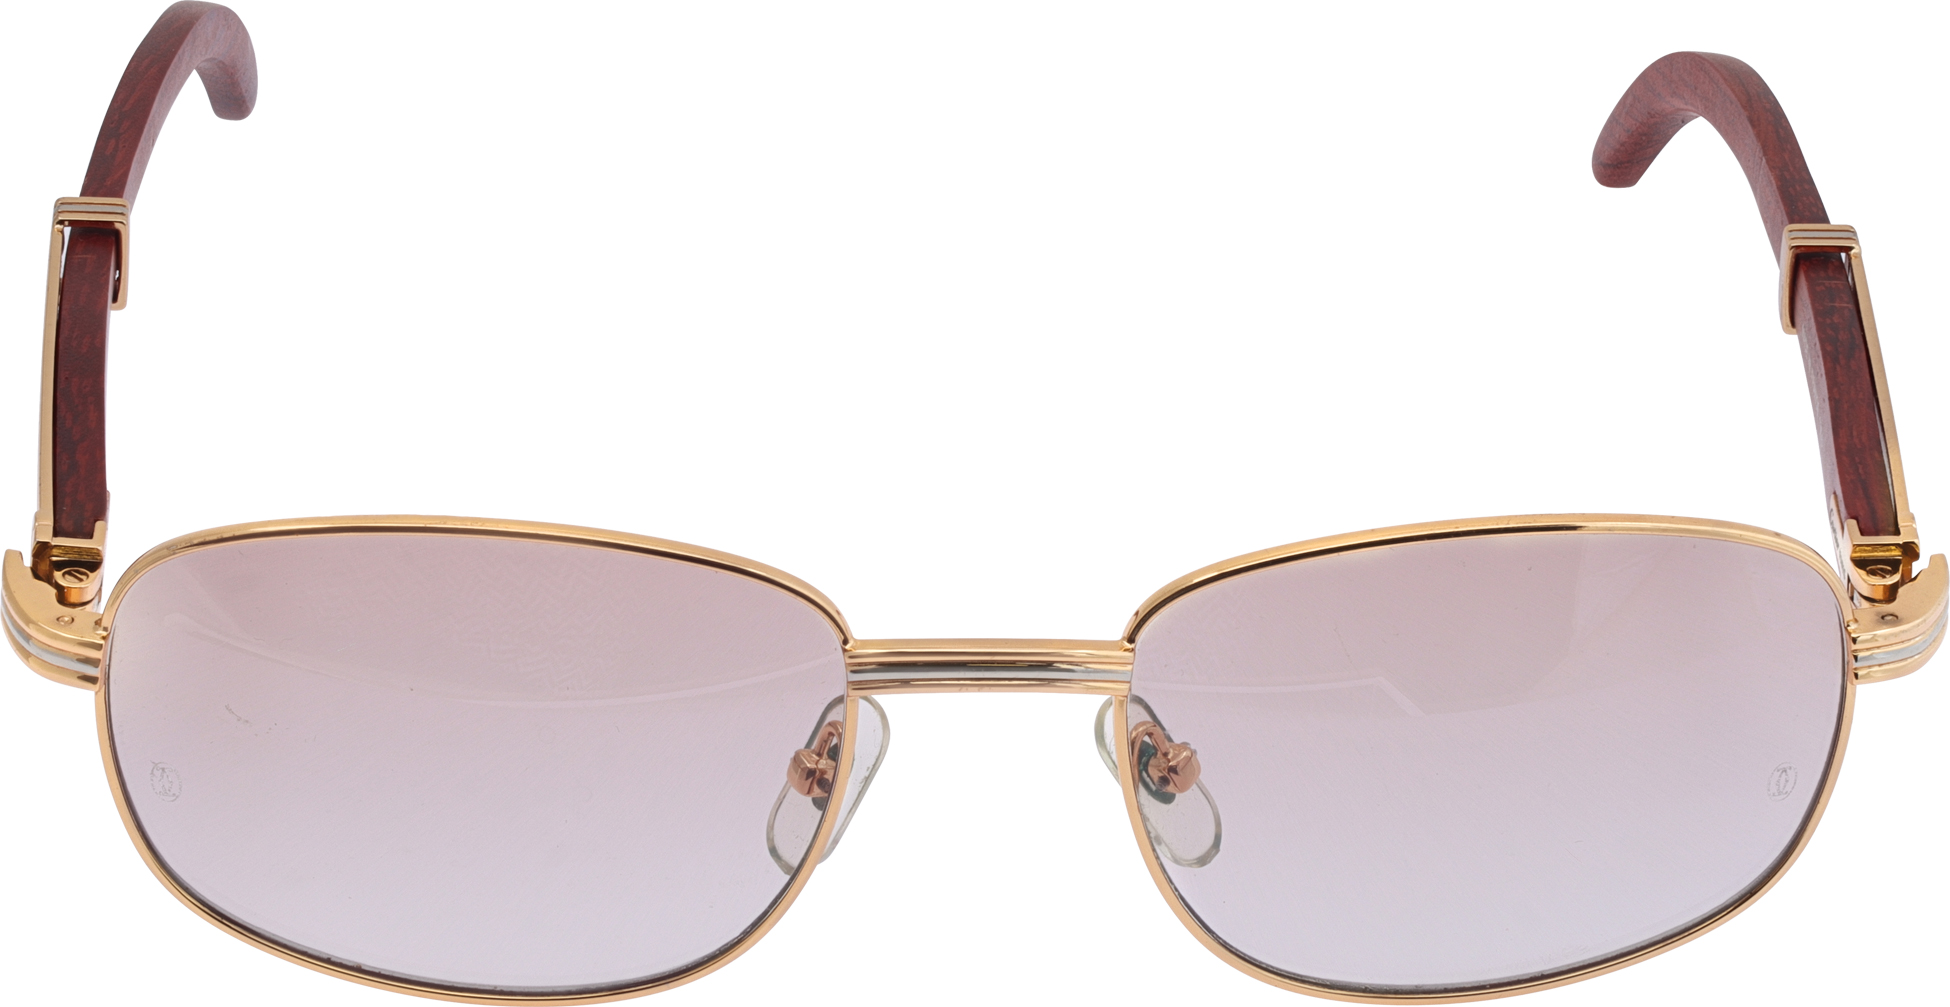 Cartier square-frame wood sunglasses